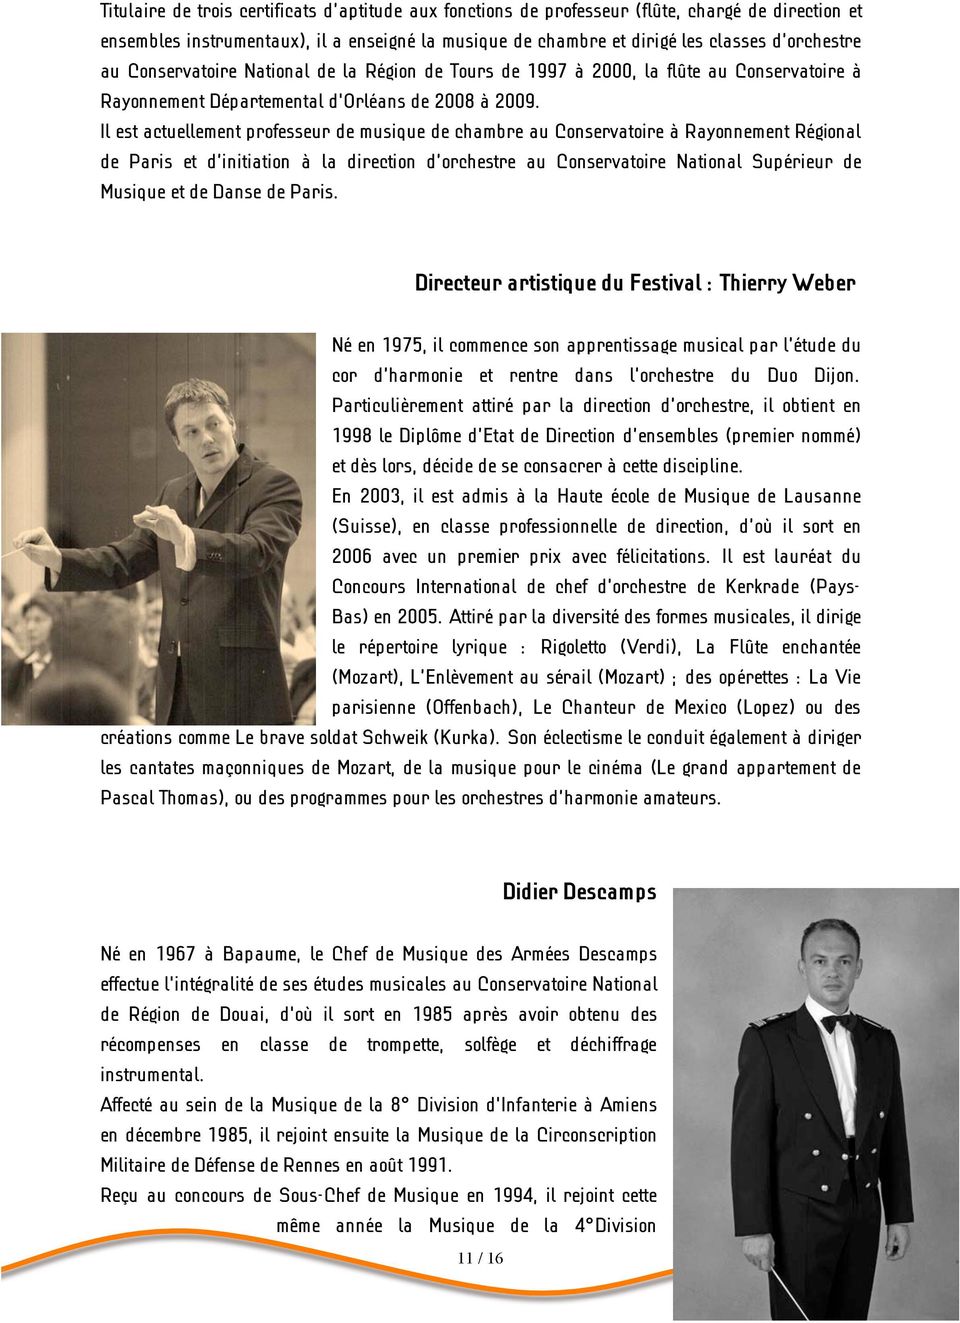 Il est actuellement professeur de musique de chambre au Conservatoire à Rayonnement Régional de Paris et d initiation à la direction d orchestre au Conservatoire National Supérieur de Musique et de